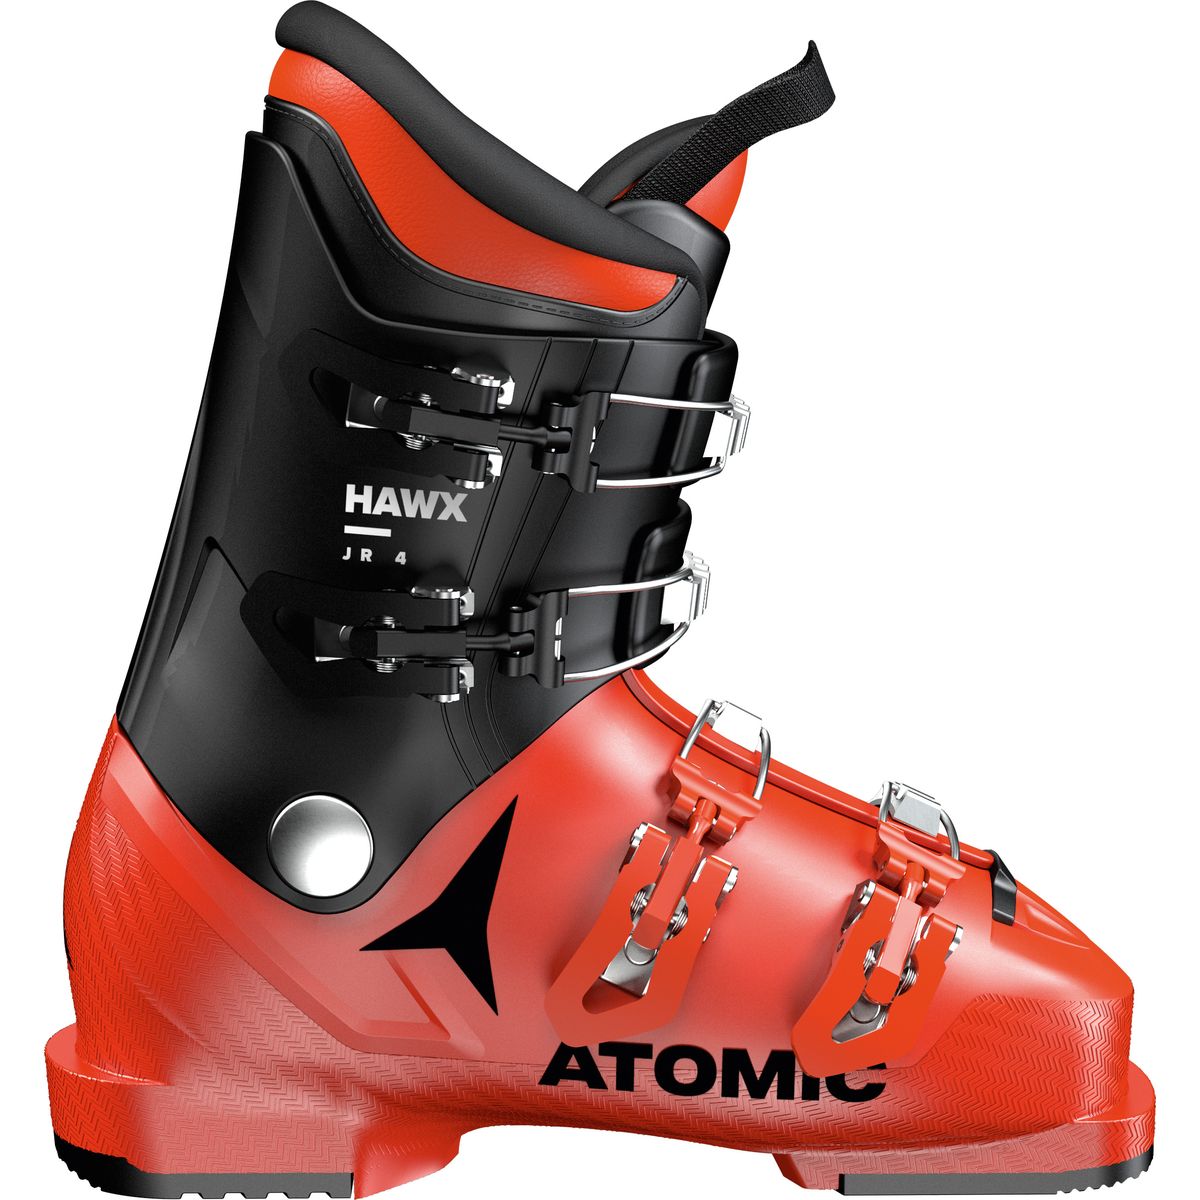 Atomic Hawx Jr 4 Kinder Skistiefel